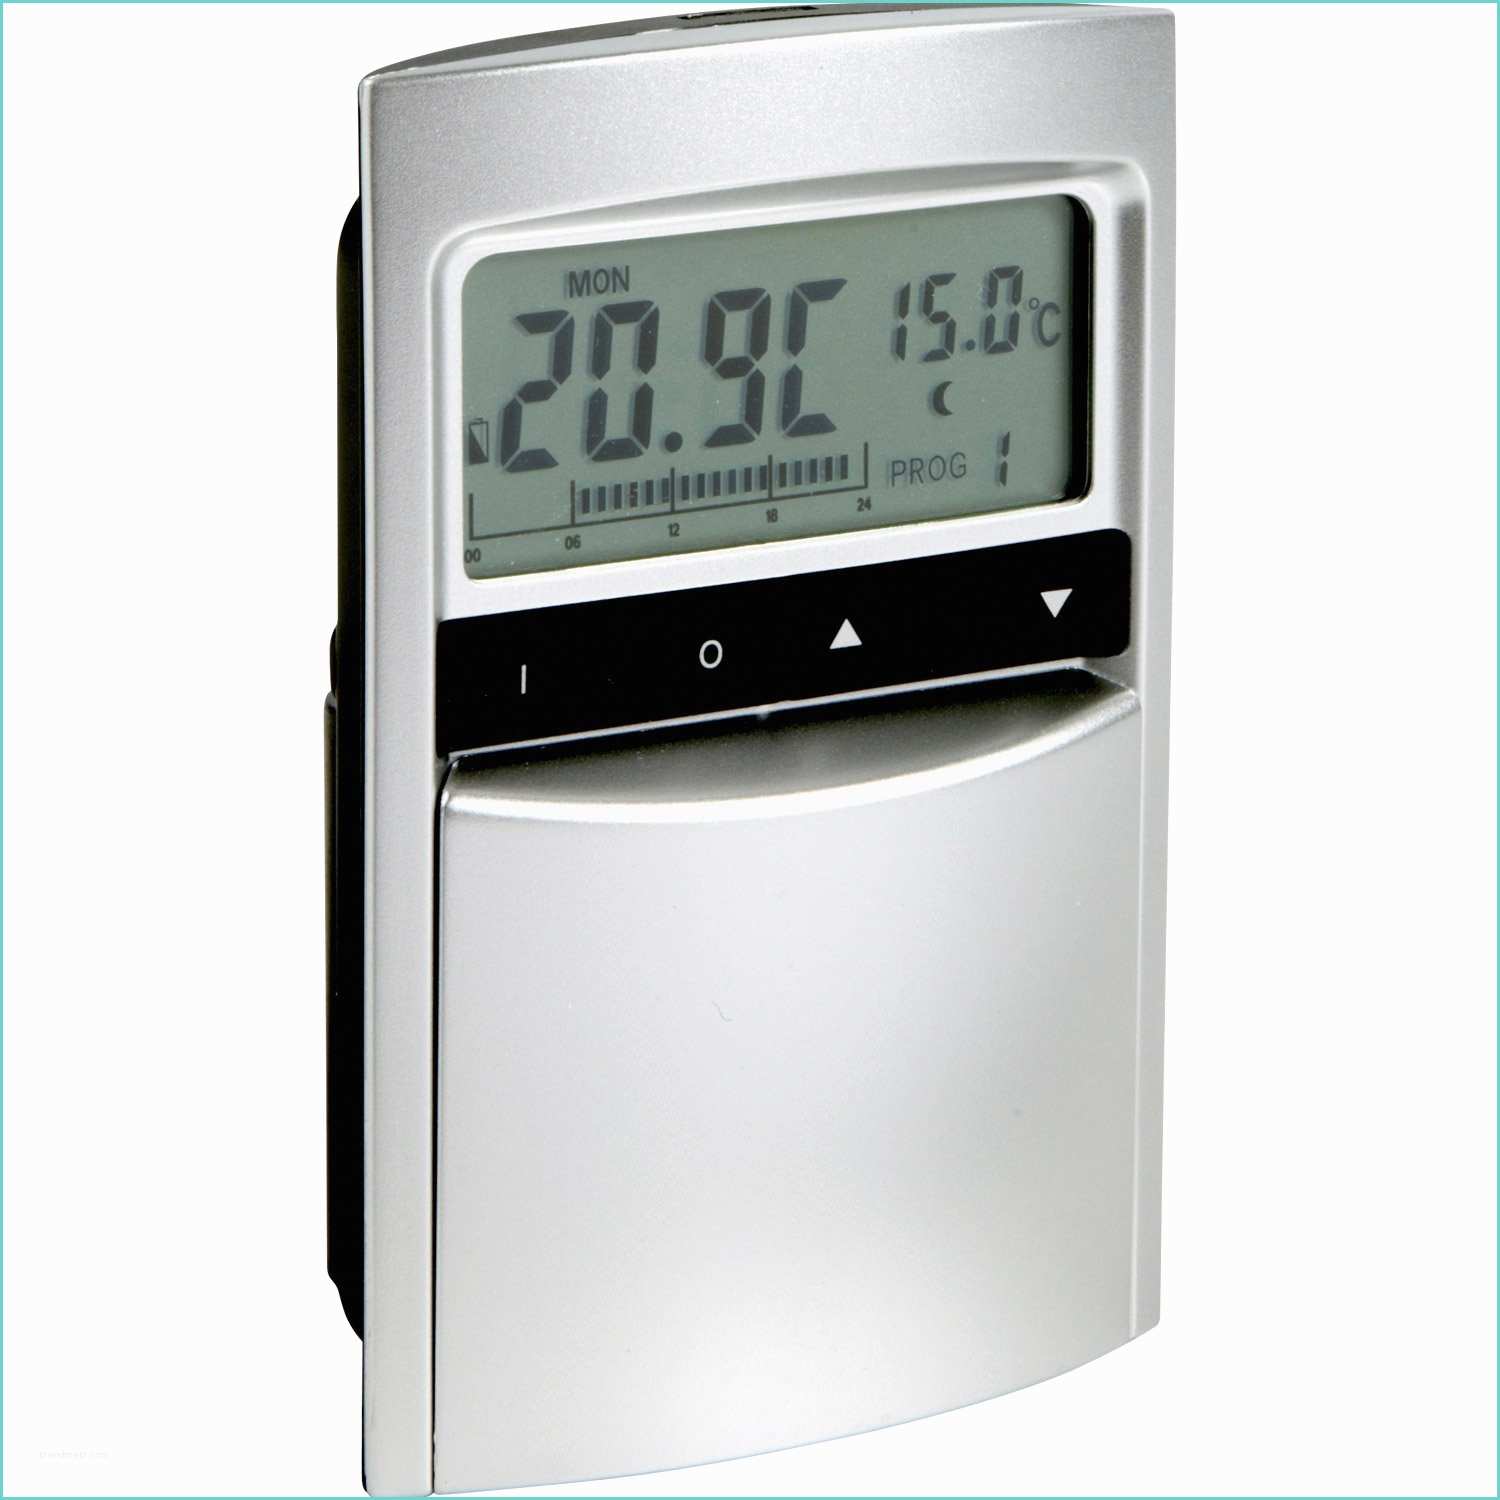 Boitier thermostat Radiateur Electrique thermostat Programmable Sans Fil Celcia Crono 912 Rf